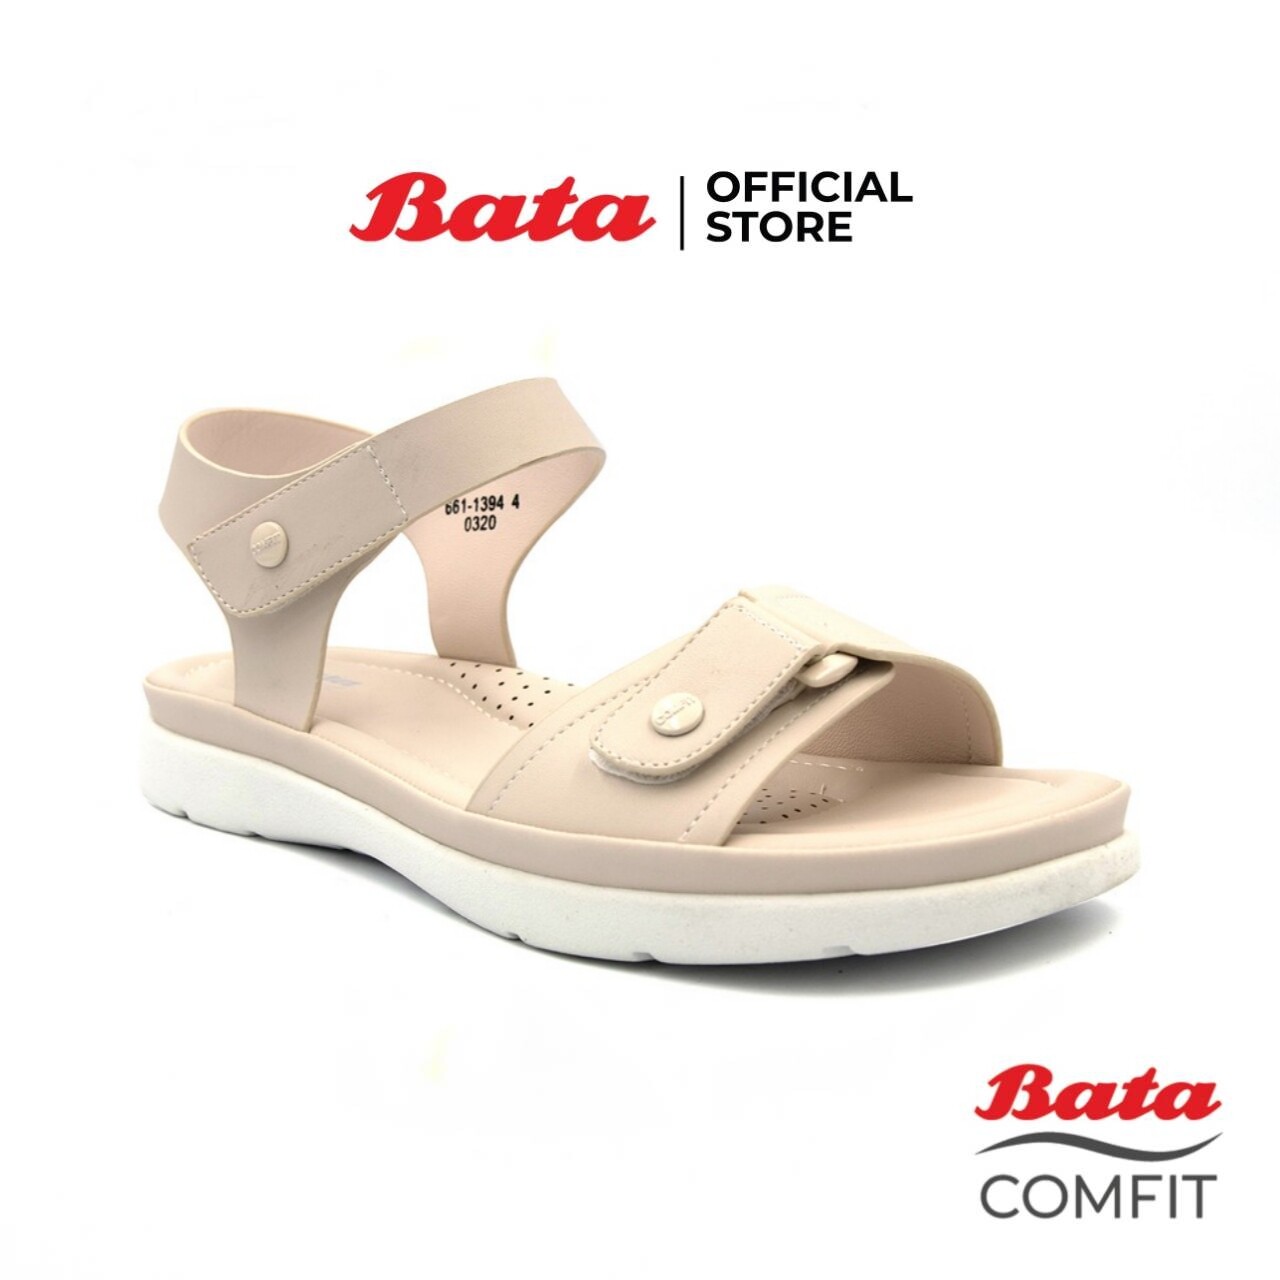 Bata COMFIT SANDAL รองเท้าแตะรัดส้นหญิง แบบสวม สีขาว รหัส 6611394 Ladiesflat Fashion SUMMER